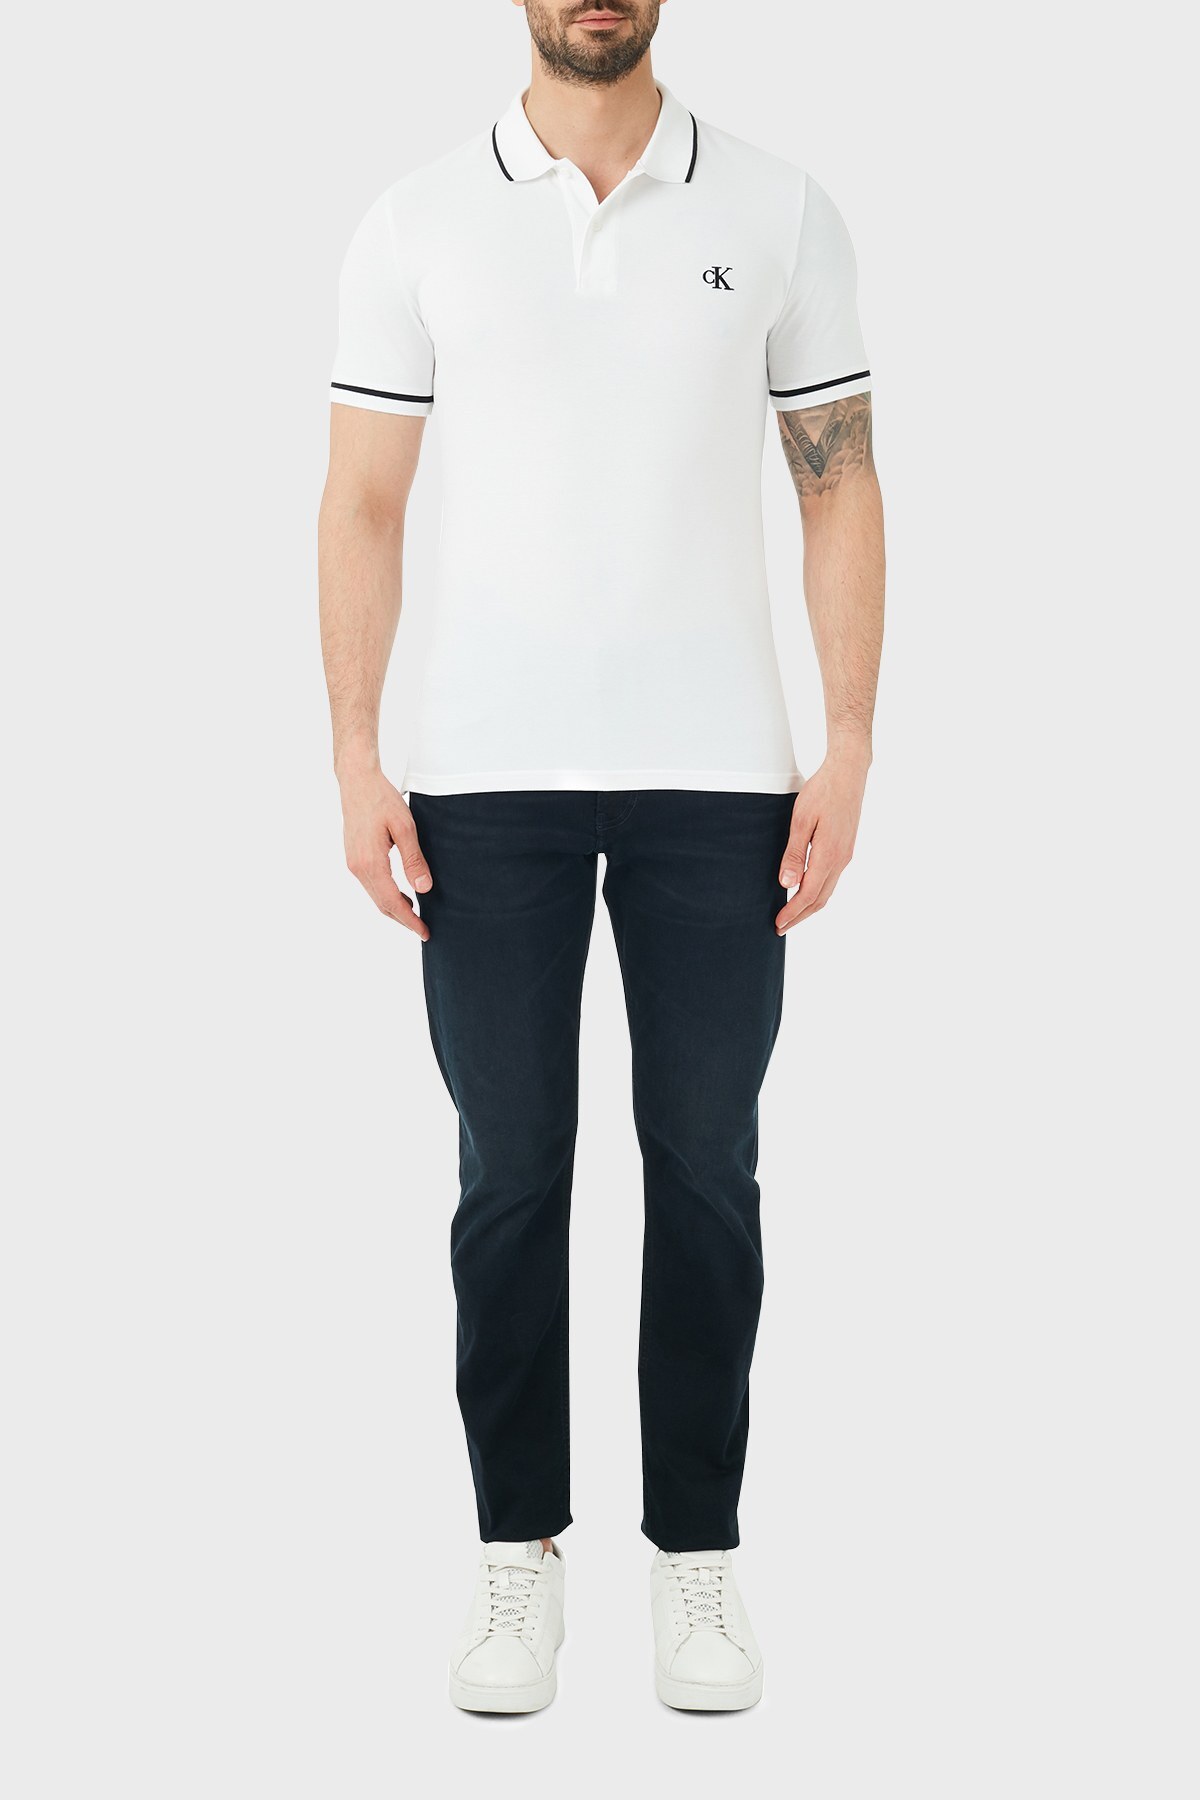 Calvin Klein Slim Fit Pamuklu Jeans Erkek Kot Pantolon J30J318242 1BJ LACİVERT